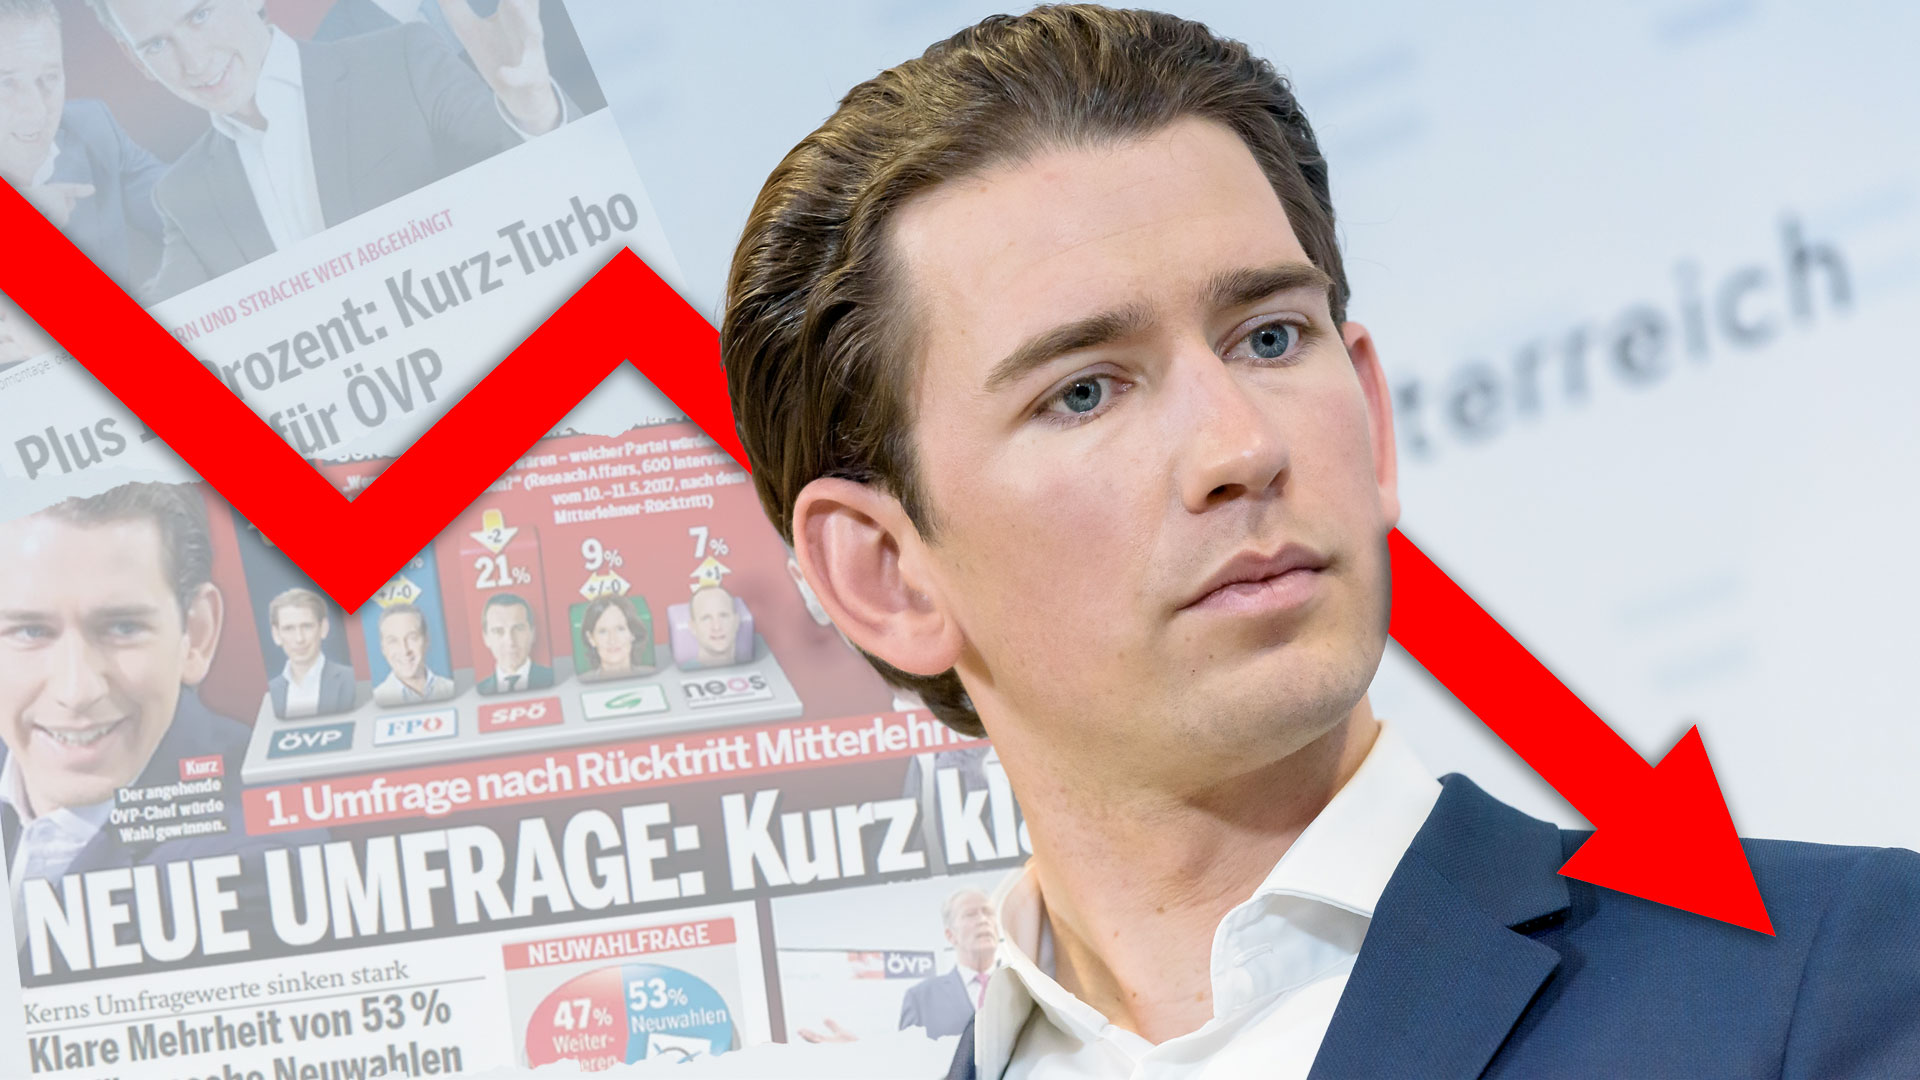 Zwei Drittel der Österreicher wünschen sich, dass Kurz die Politik verlässt